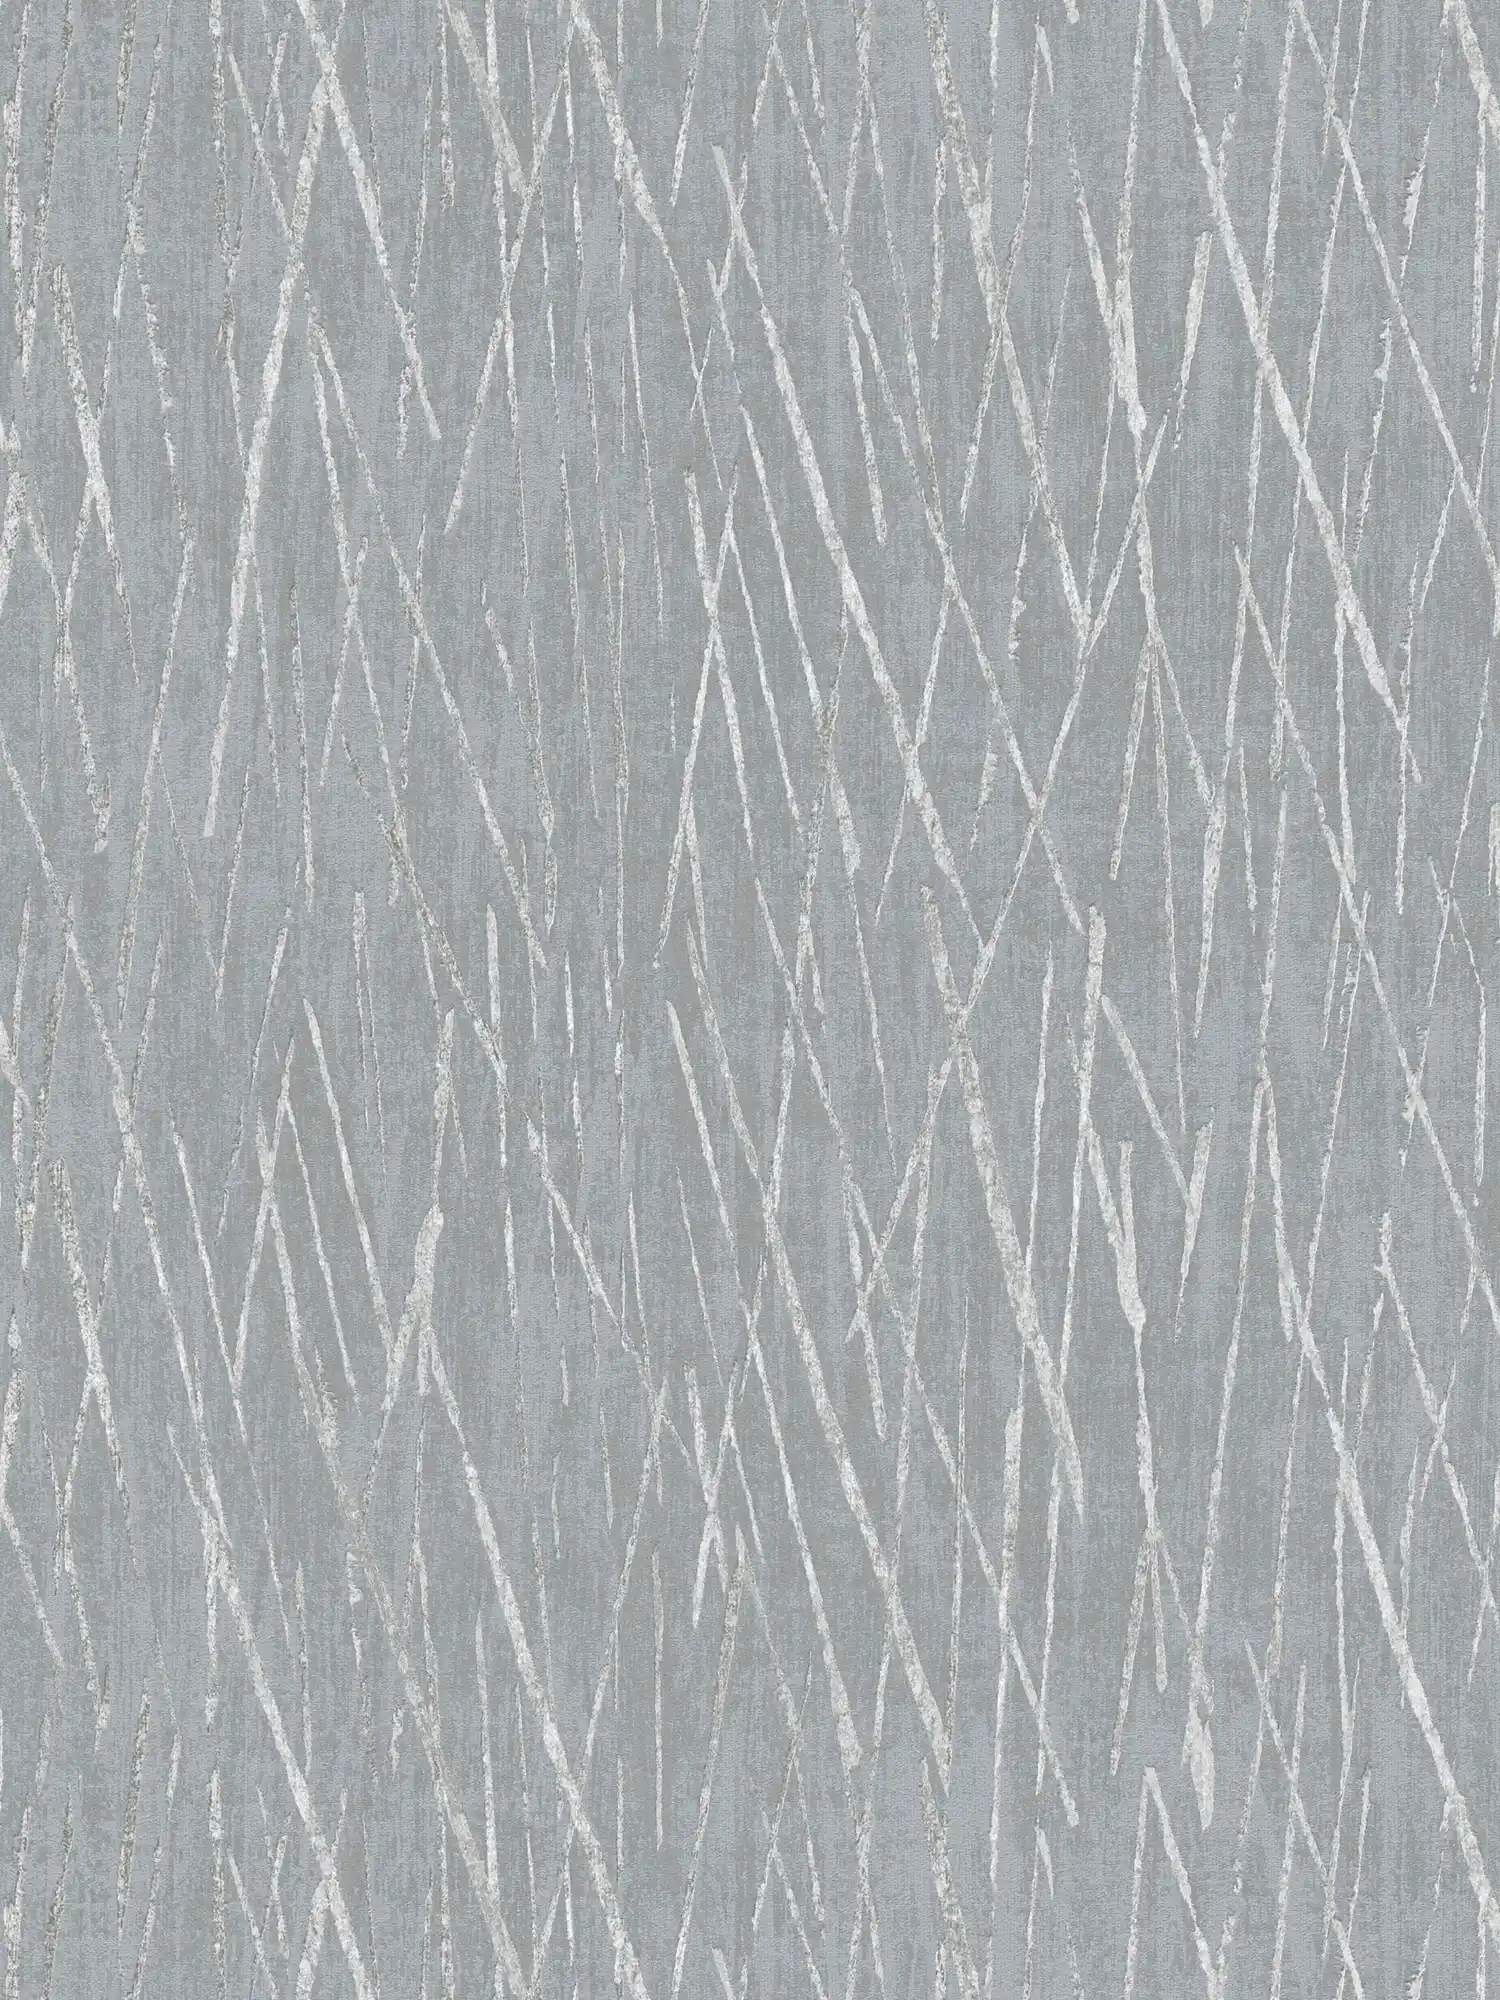 Carta da parati in tessuto non tessuto con disegno della natura ed effetto metallizzato - grigio, metallizzato
